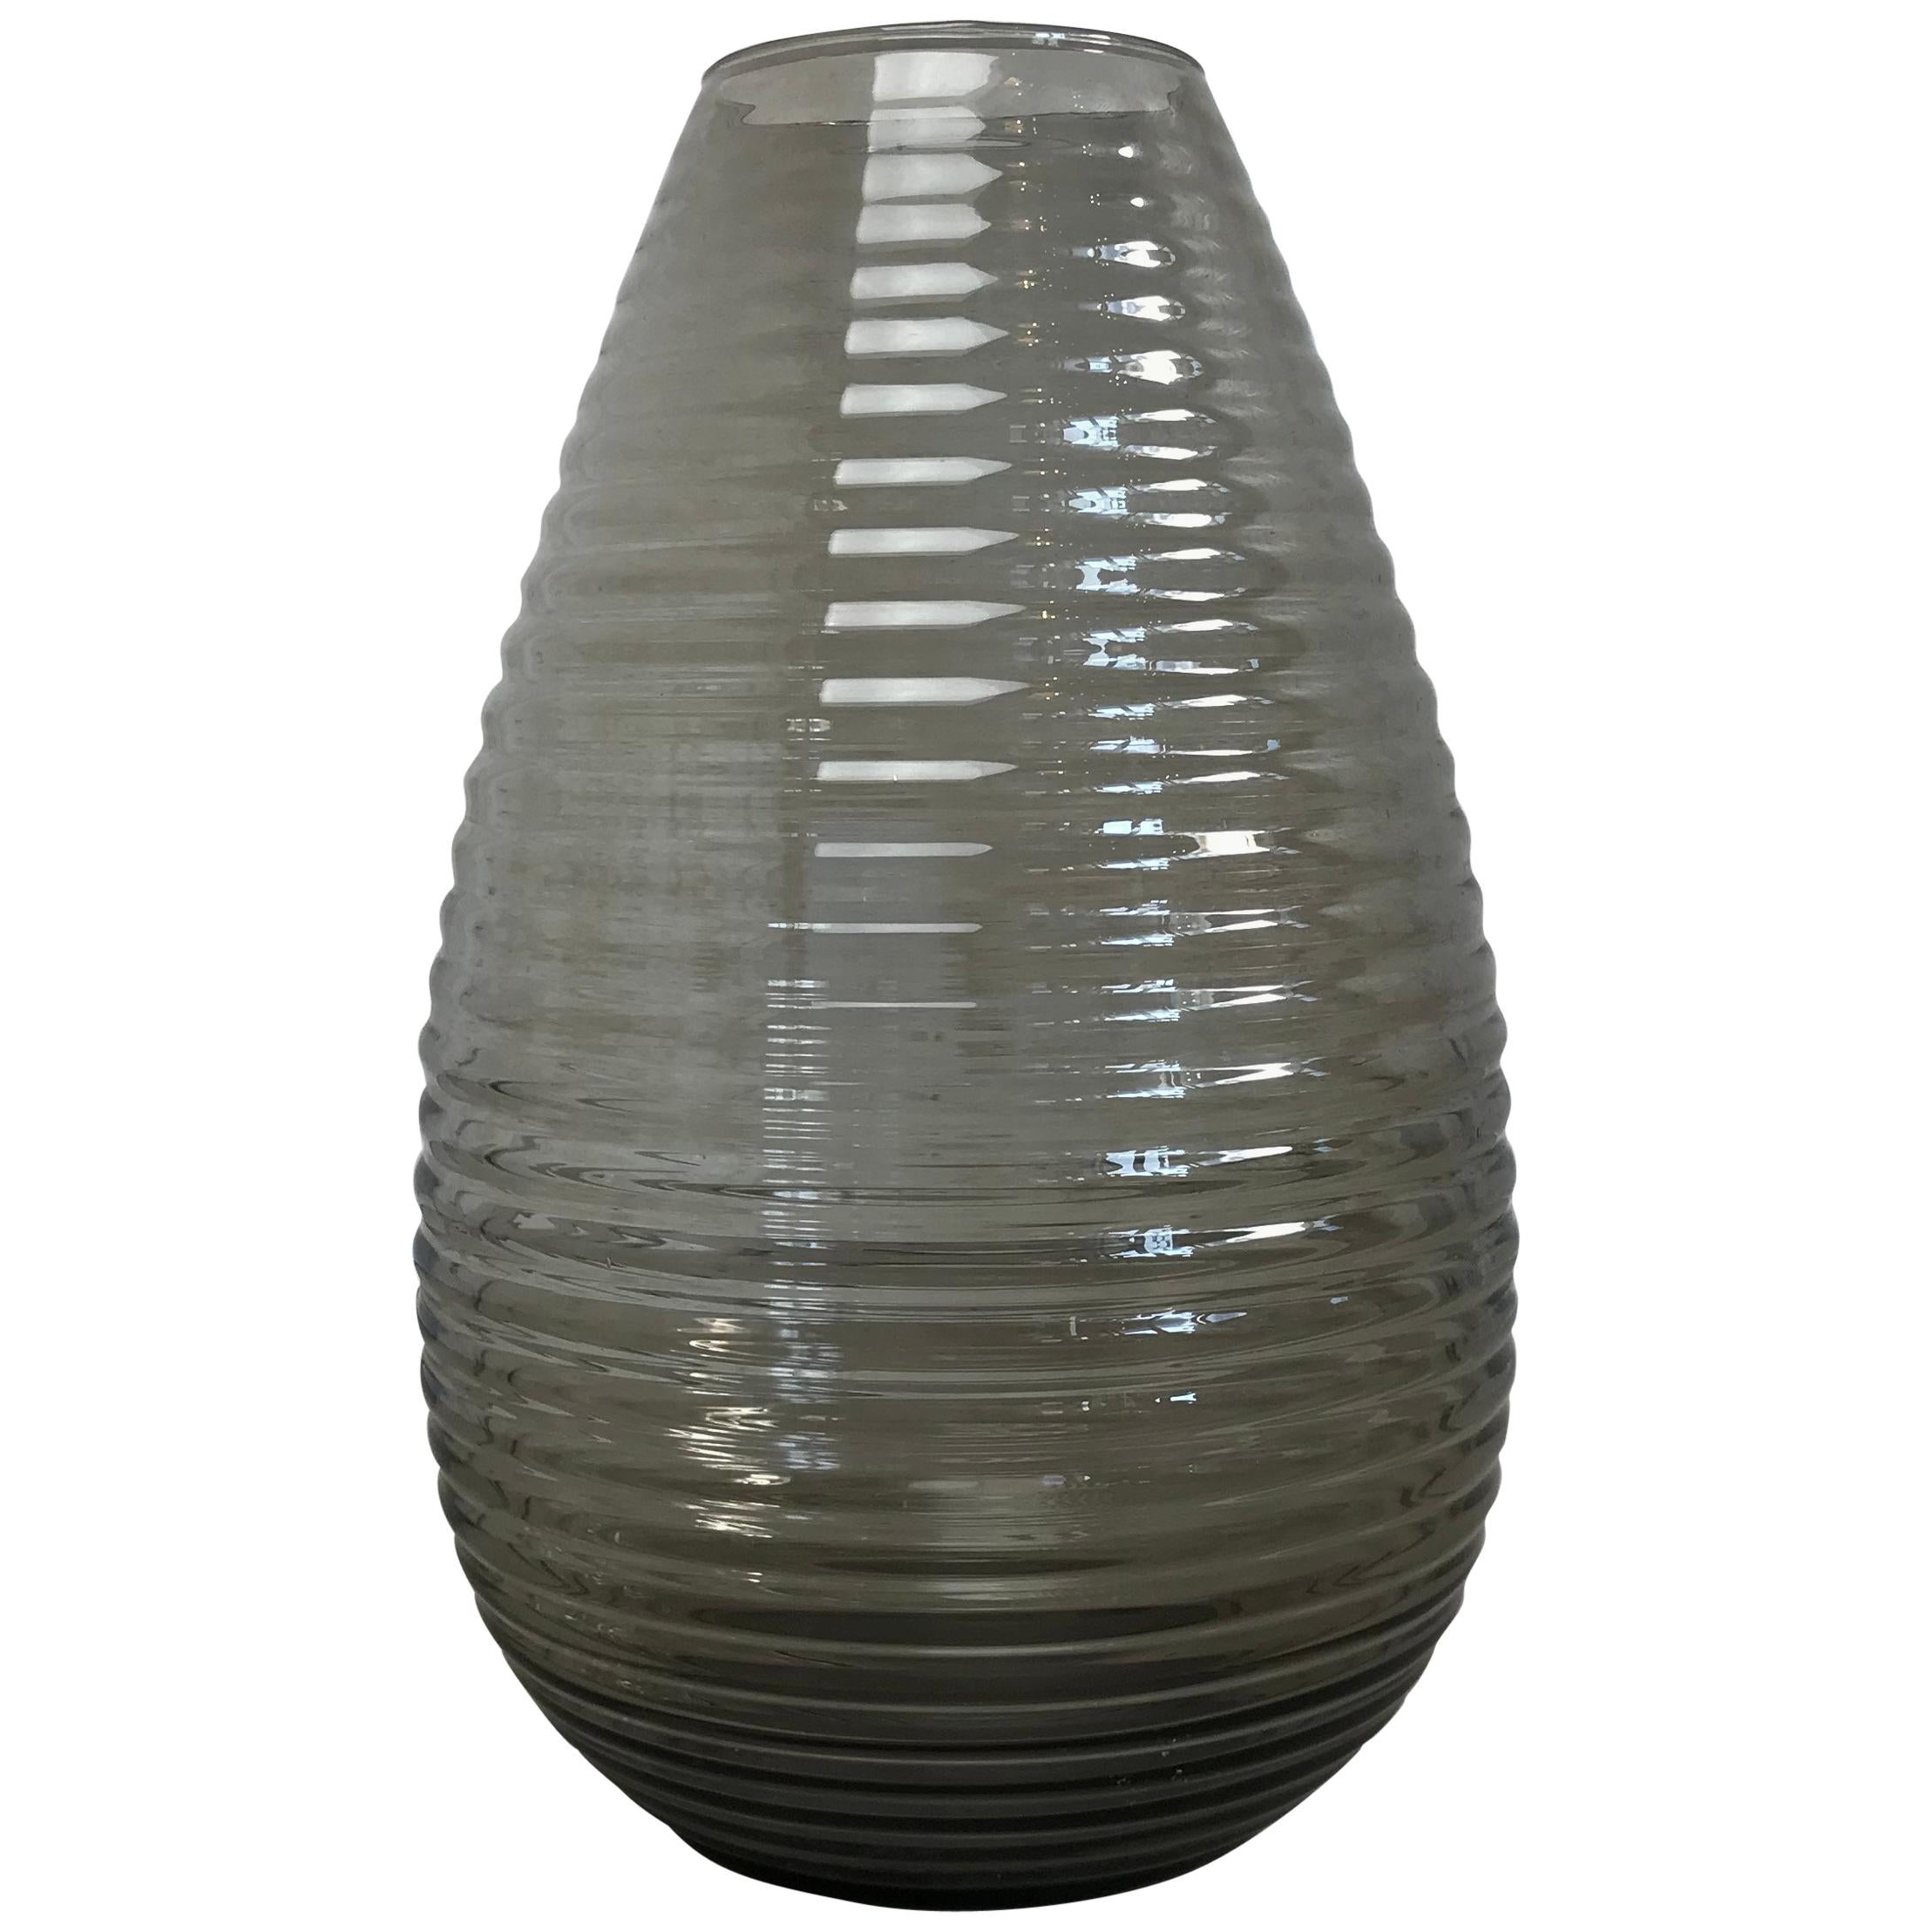 Huge Ribbed Teardrop Vase by A.D. Copier for Leerdam Glassworks, 1950s